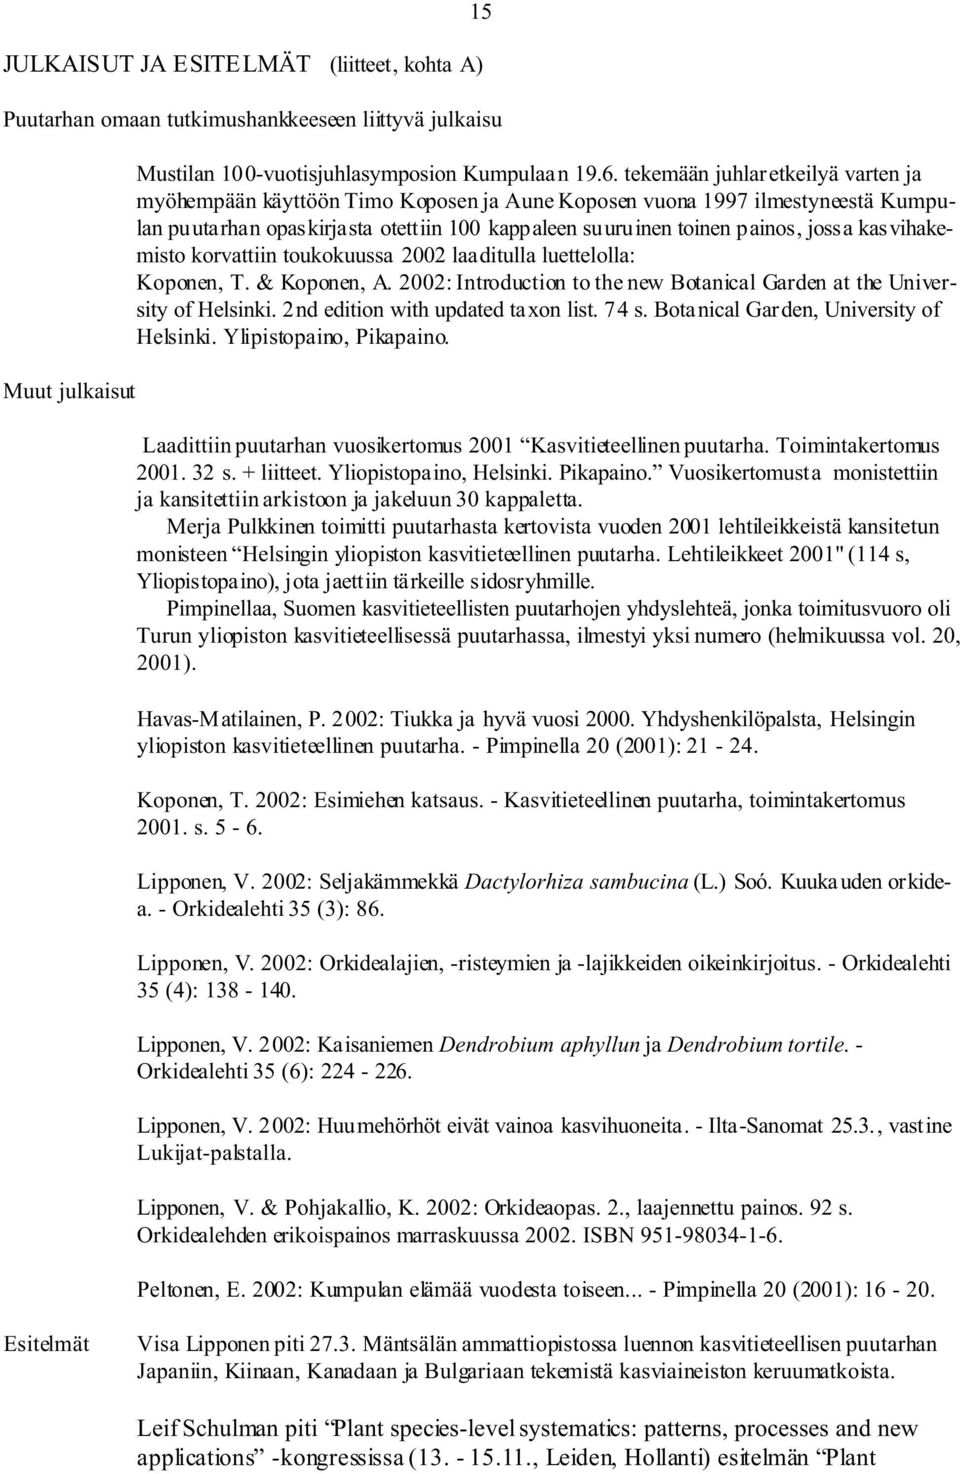 kasvihakemisto korvattiin toukokuussa 2002 laaditulla luettelolla: Koponen, T. & Koponen, A. 2002: Introduction to the new Botanical Garden at the University of Helsinki.